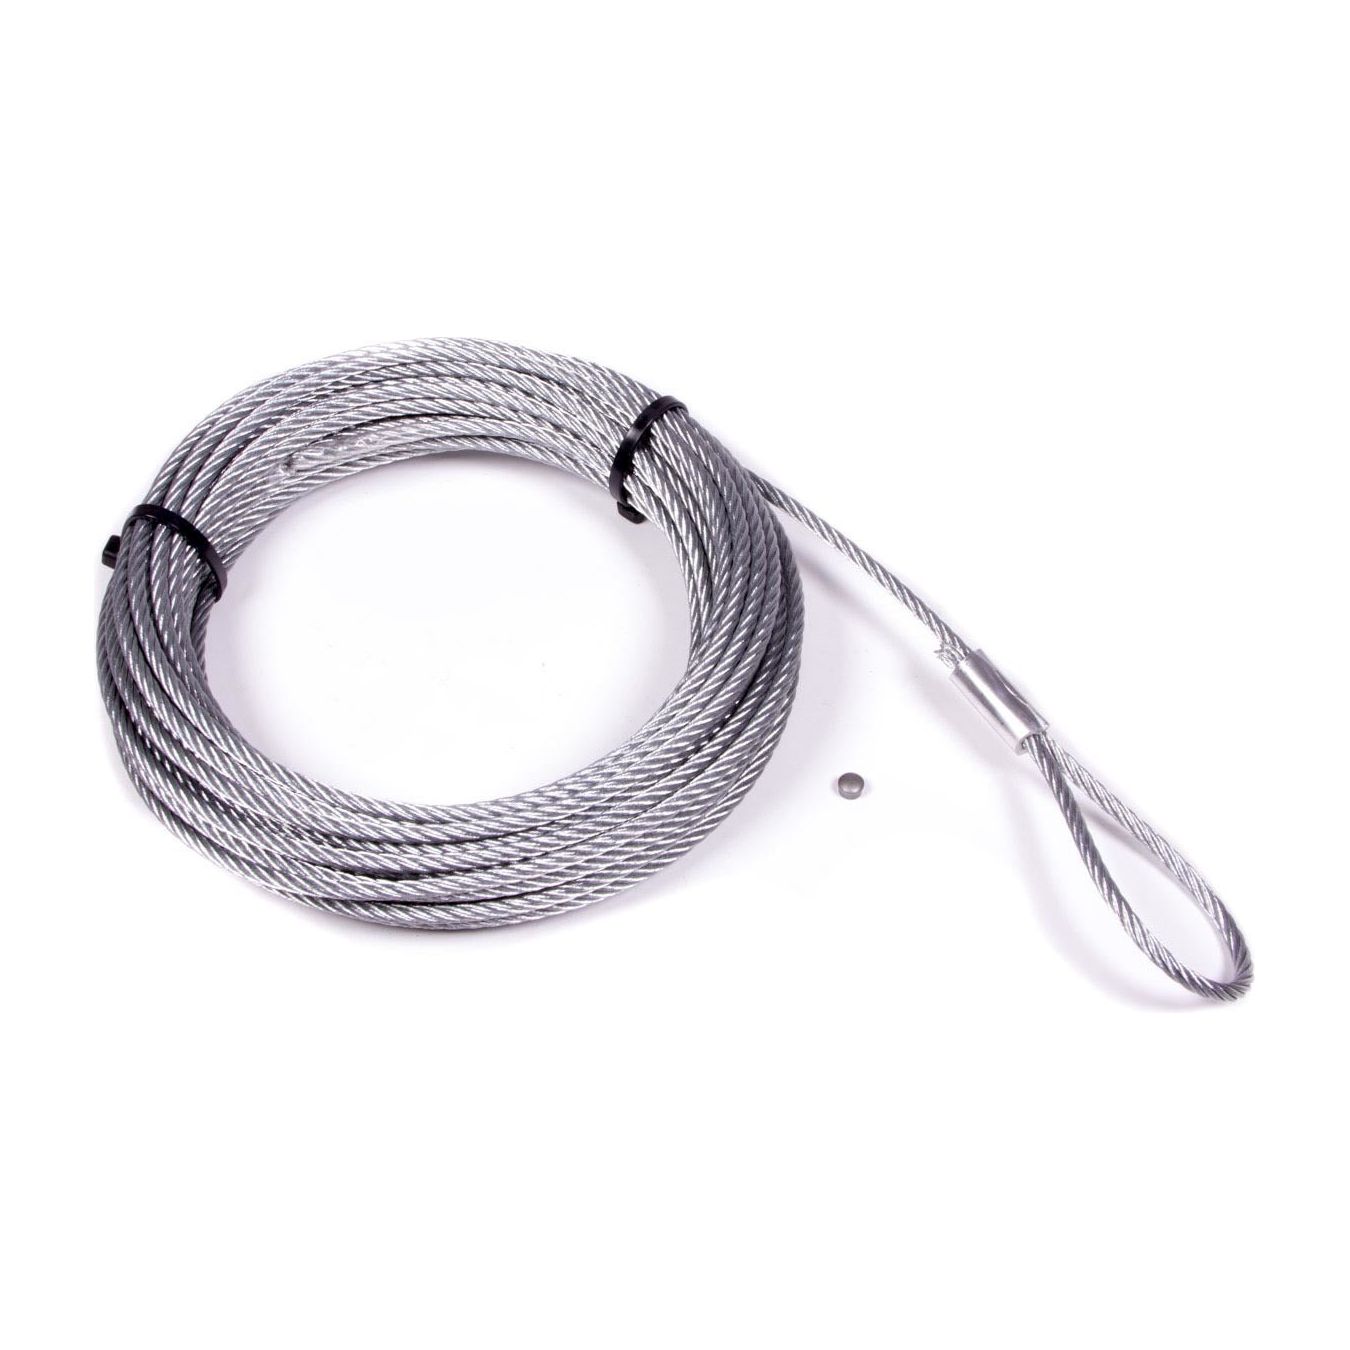 WARN 60076 - 3/16in. x 50' Non-MTO Repl. Wire Rope